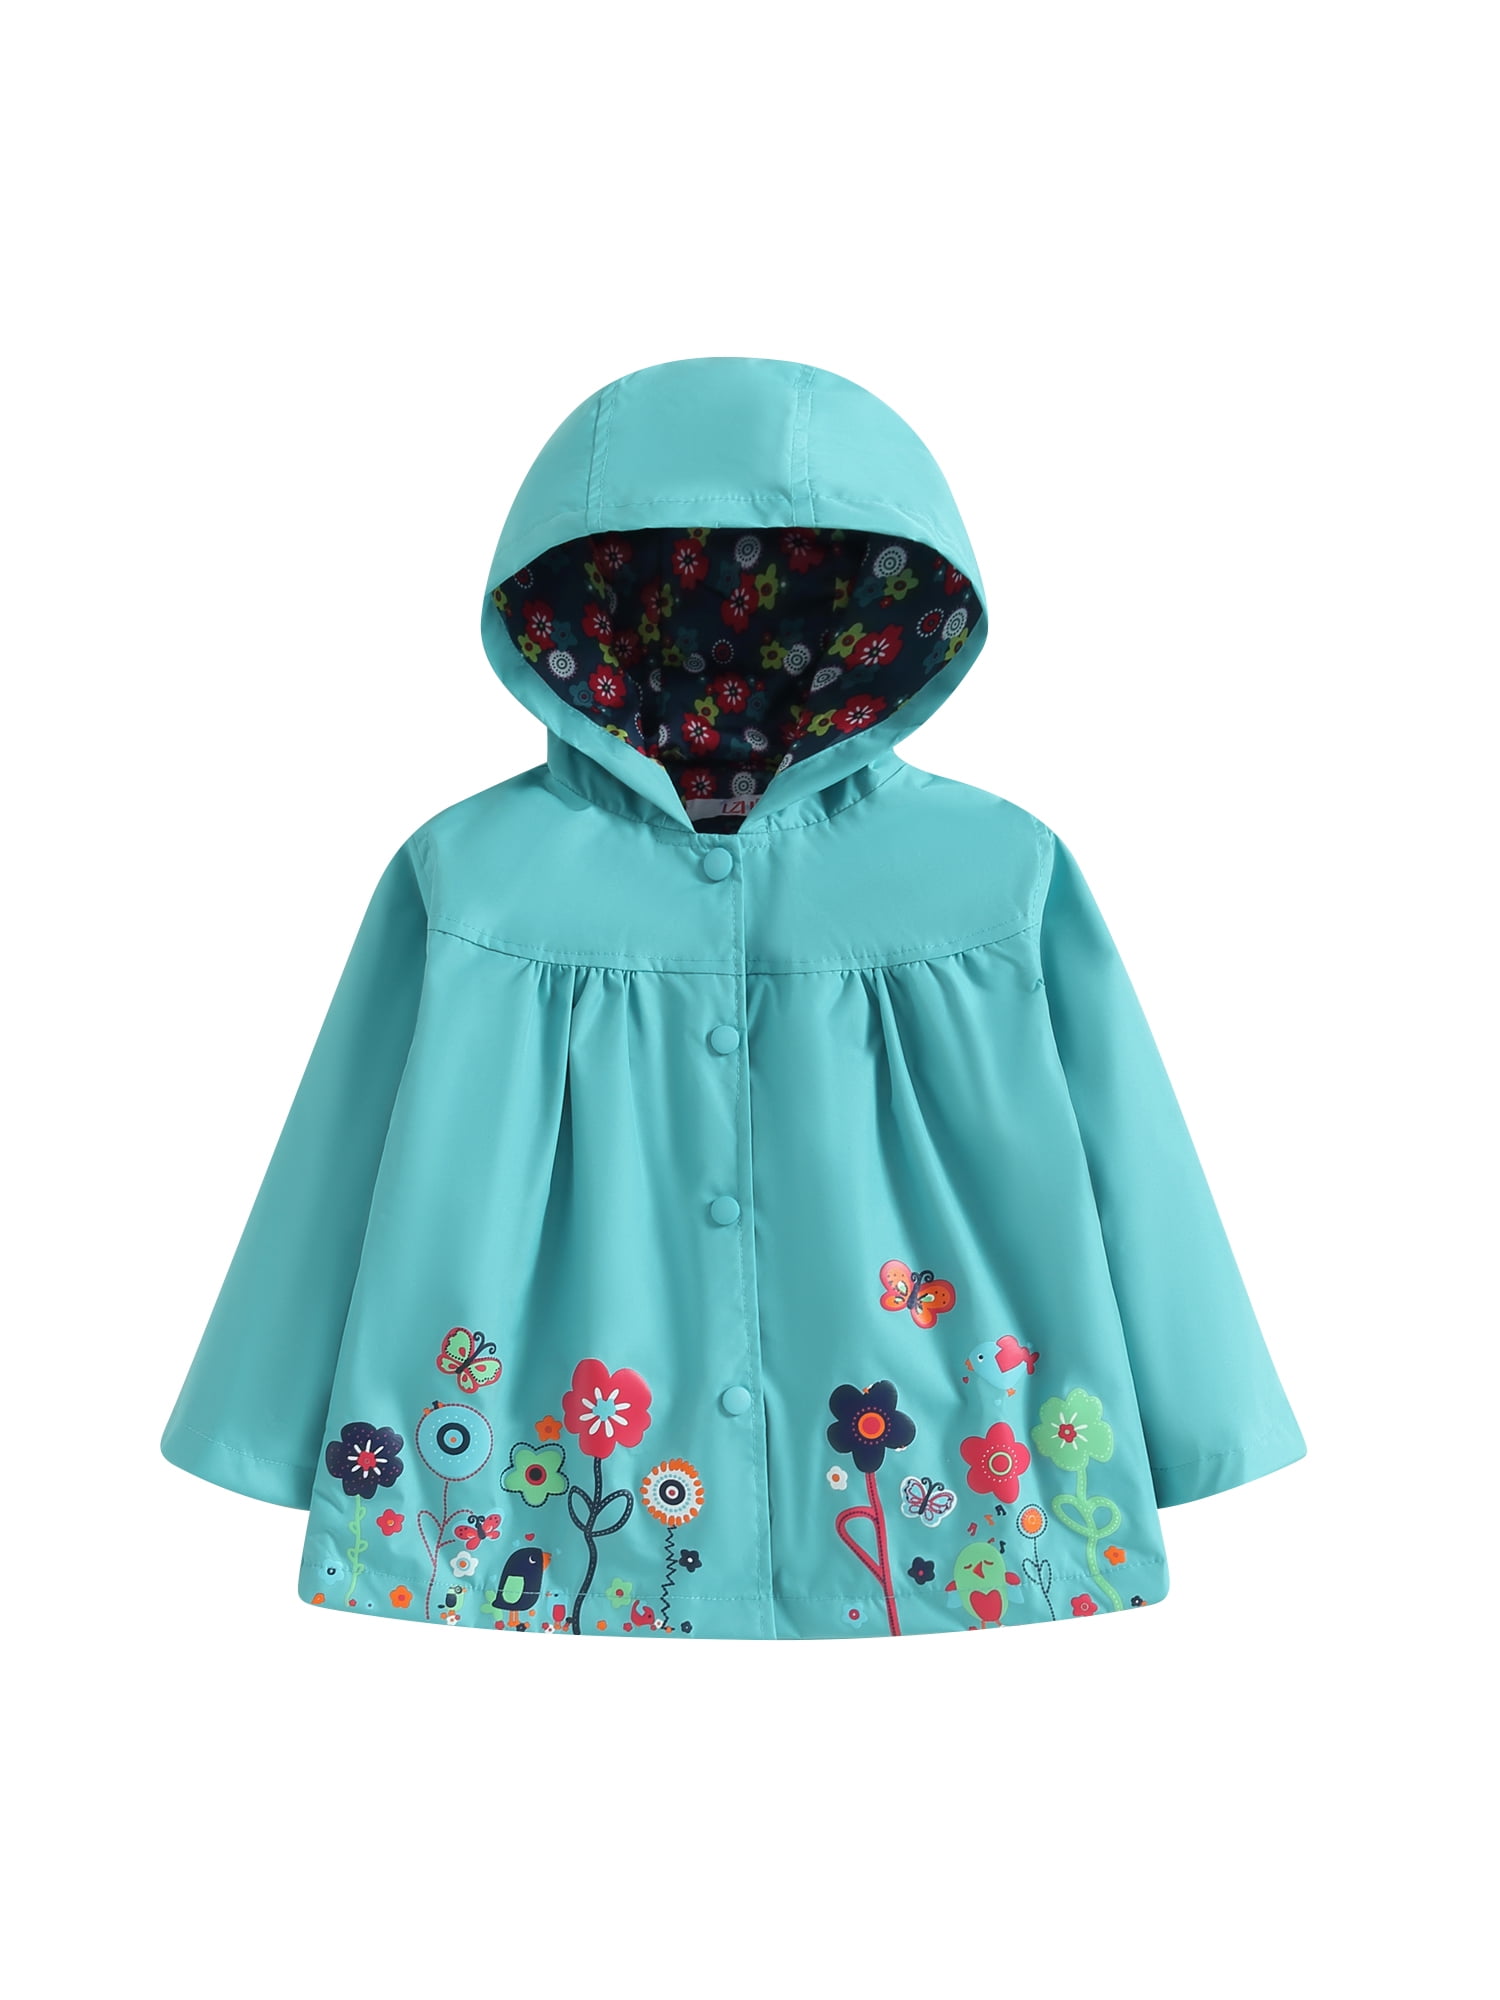 Kids Toddler Girls Flowers Hooded Waterproof Windproof Raincoat Jacket ...